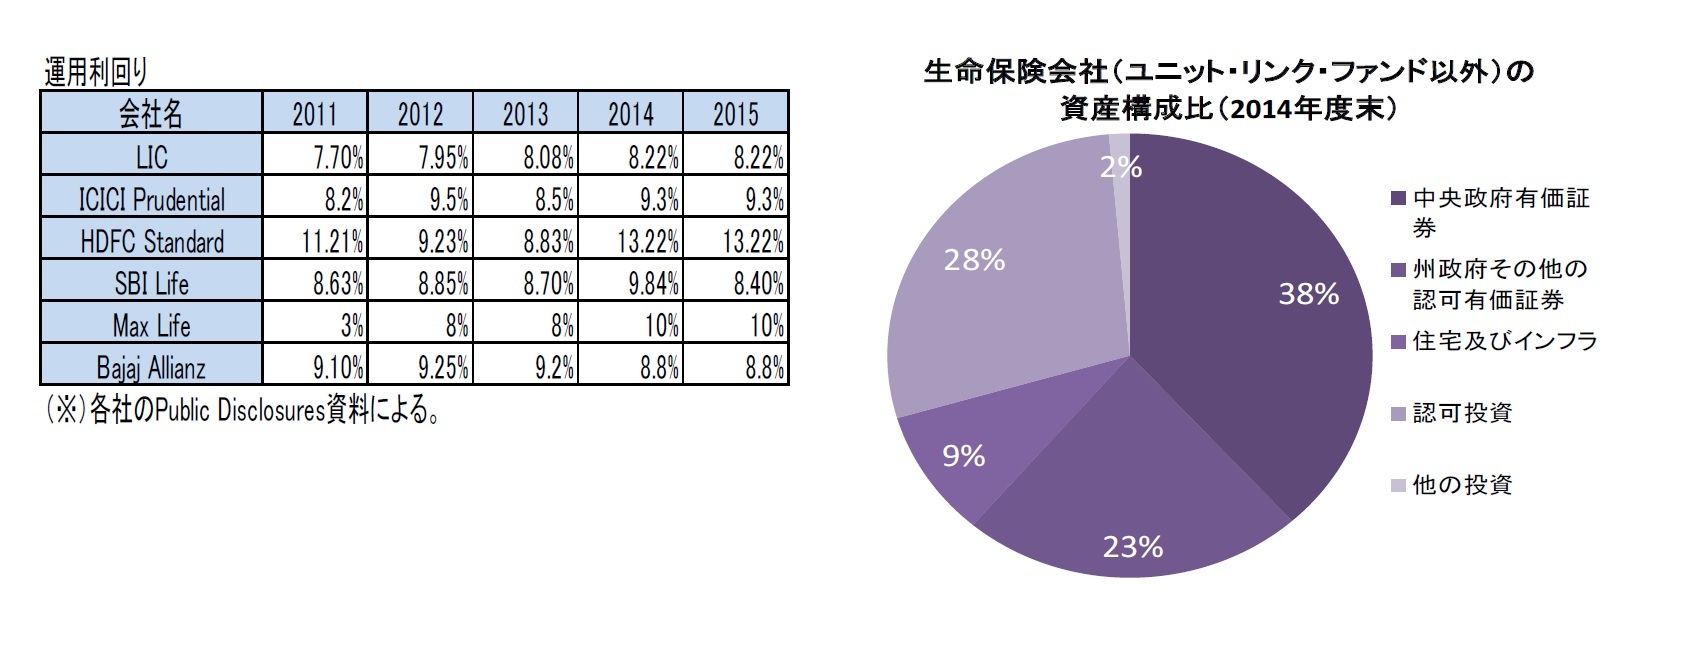 運用利回り/生命保険会社（ユニット・リンク・ファンド以外）の資産構成比（2014年度末）